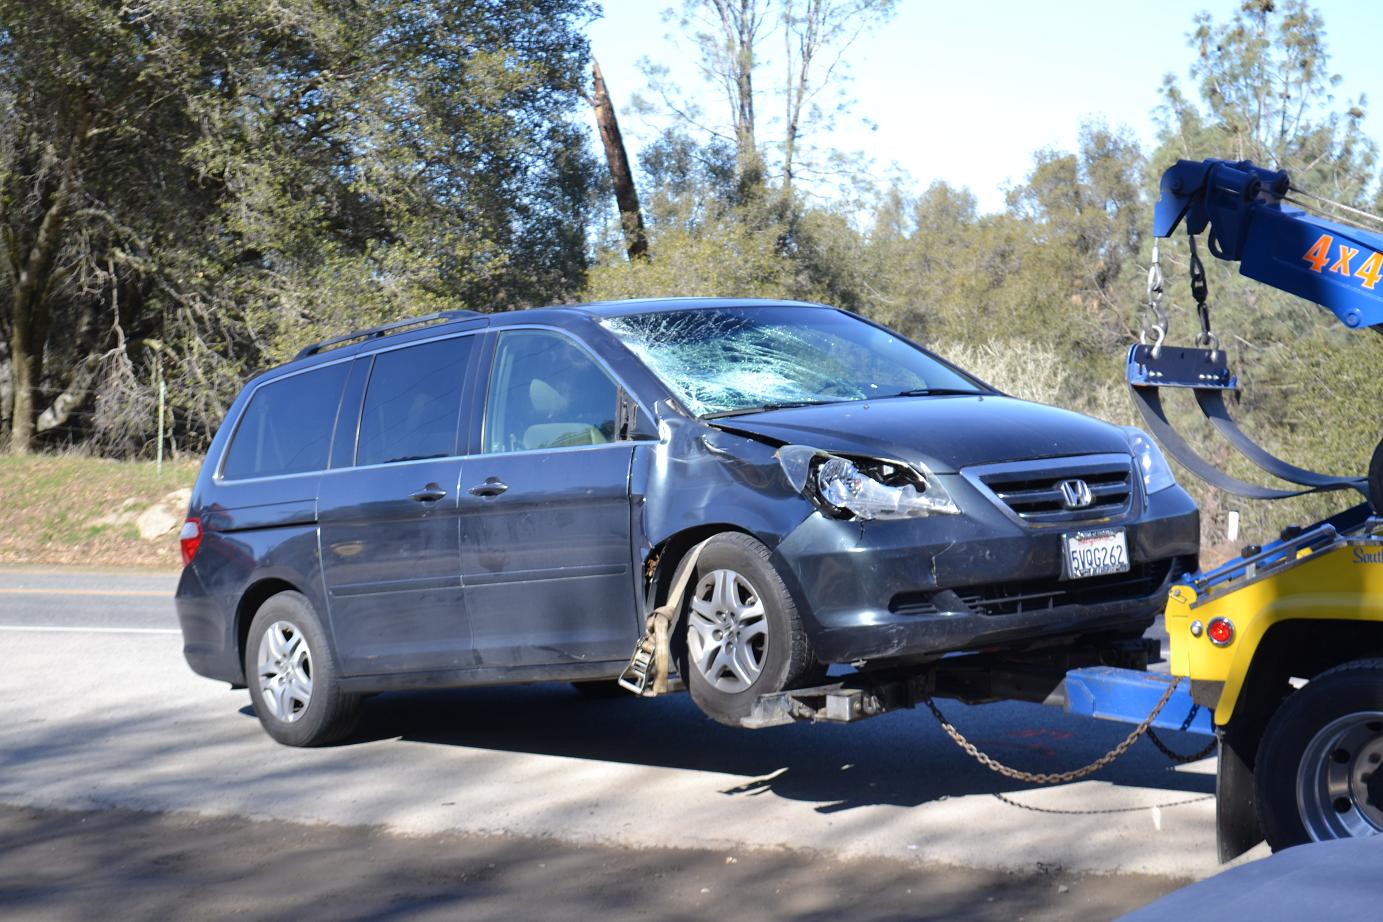 Honda mini-van involved in fatal skateboard accident